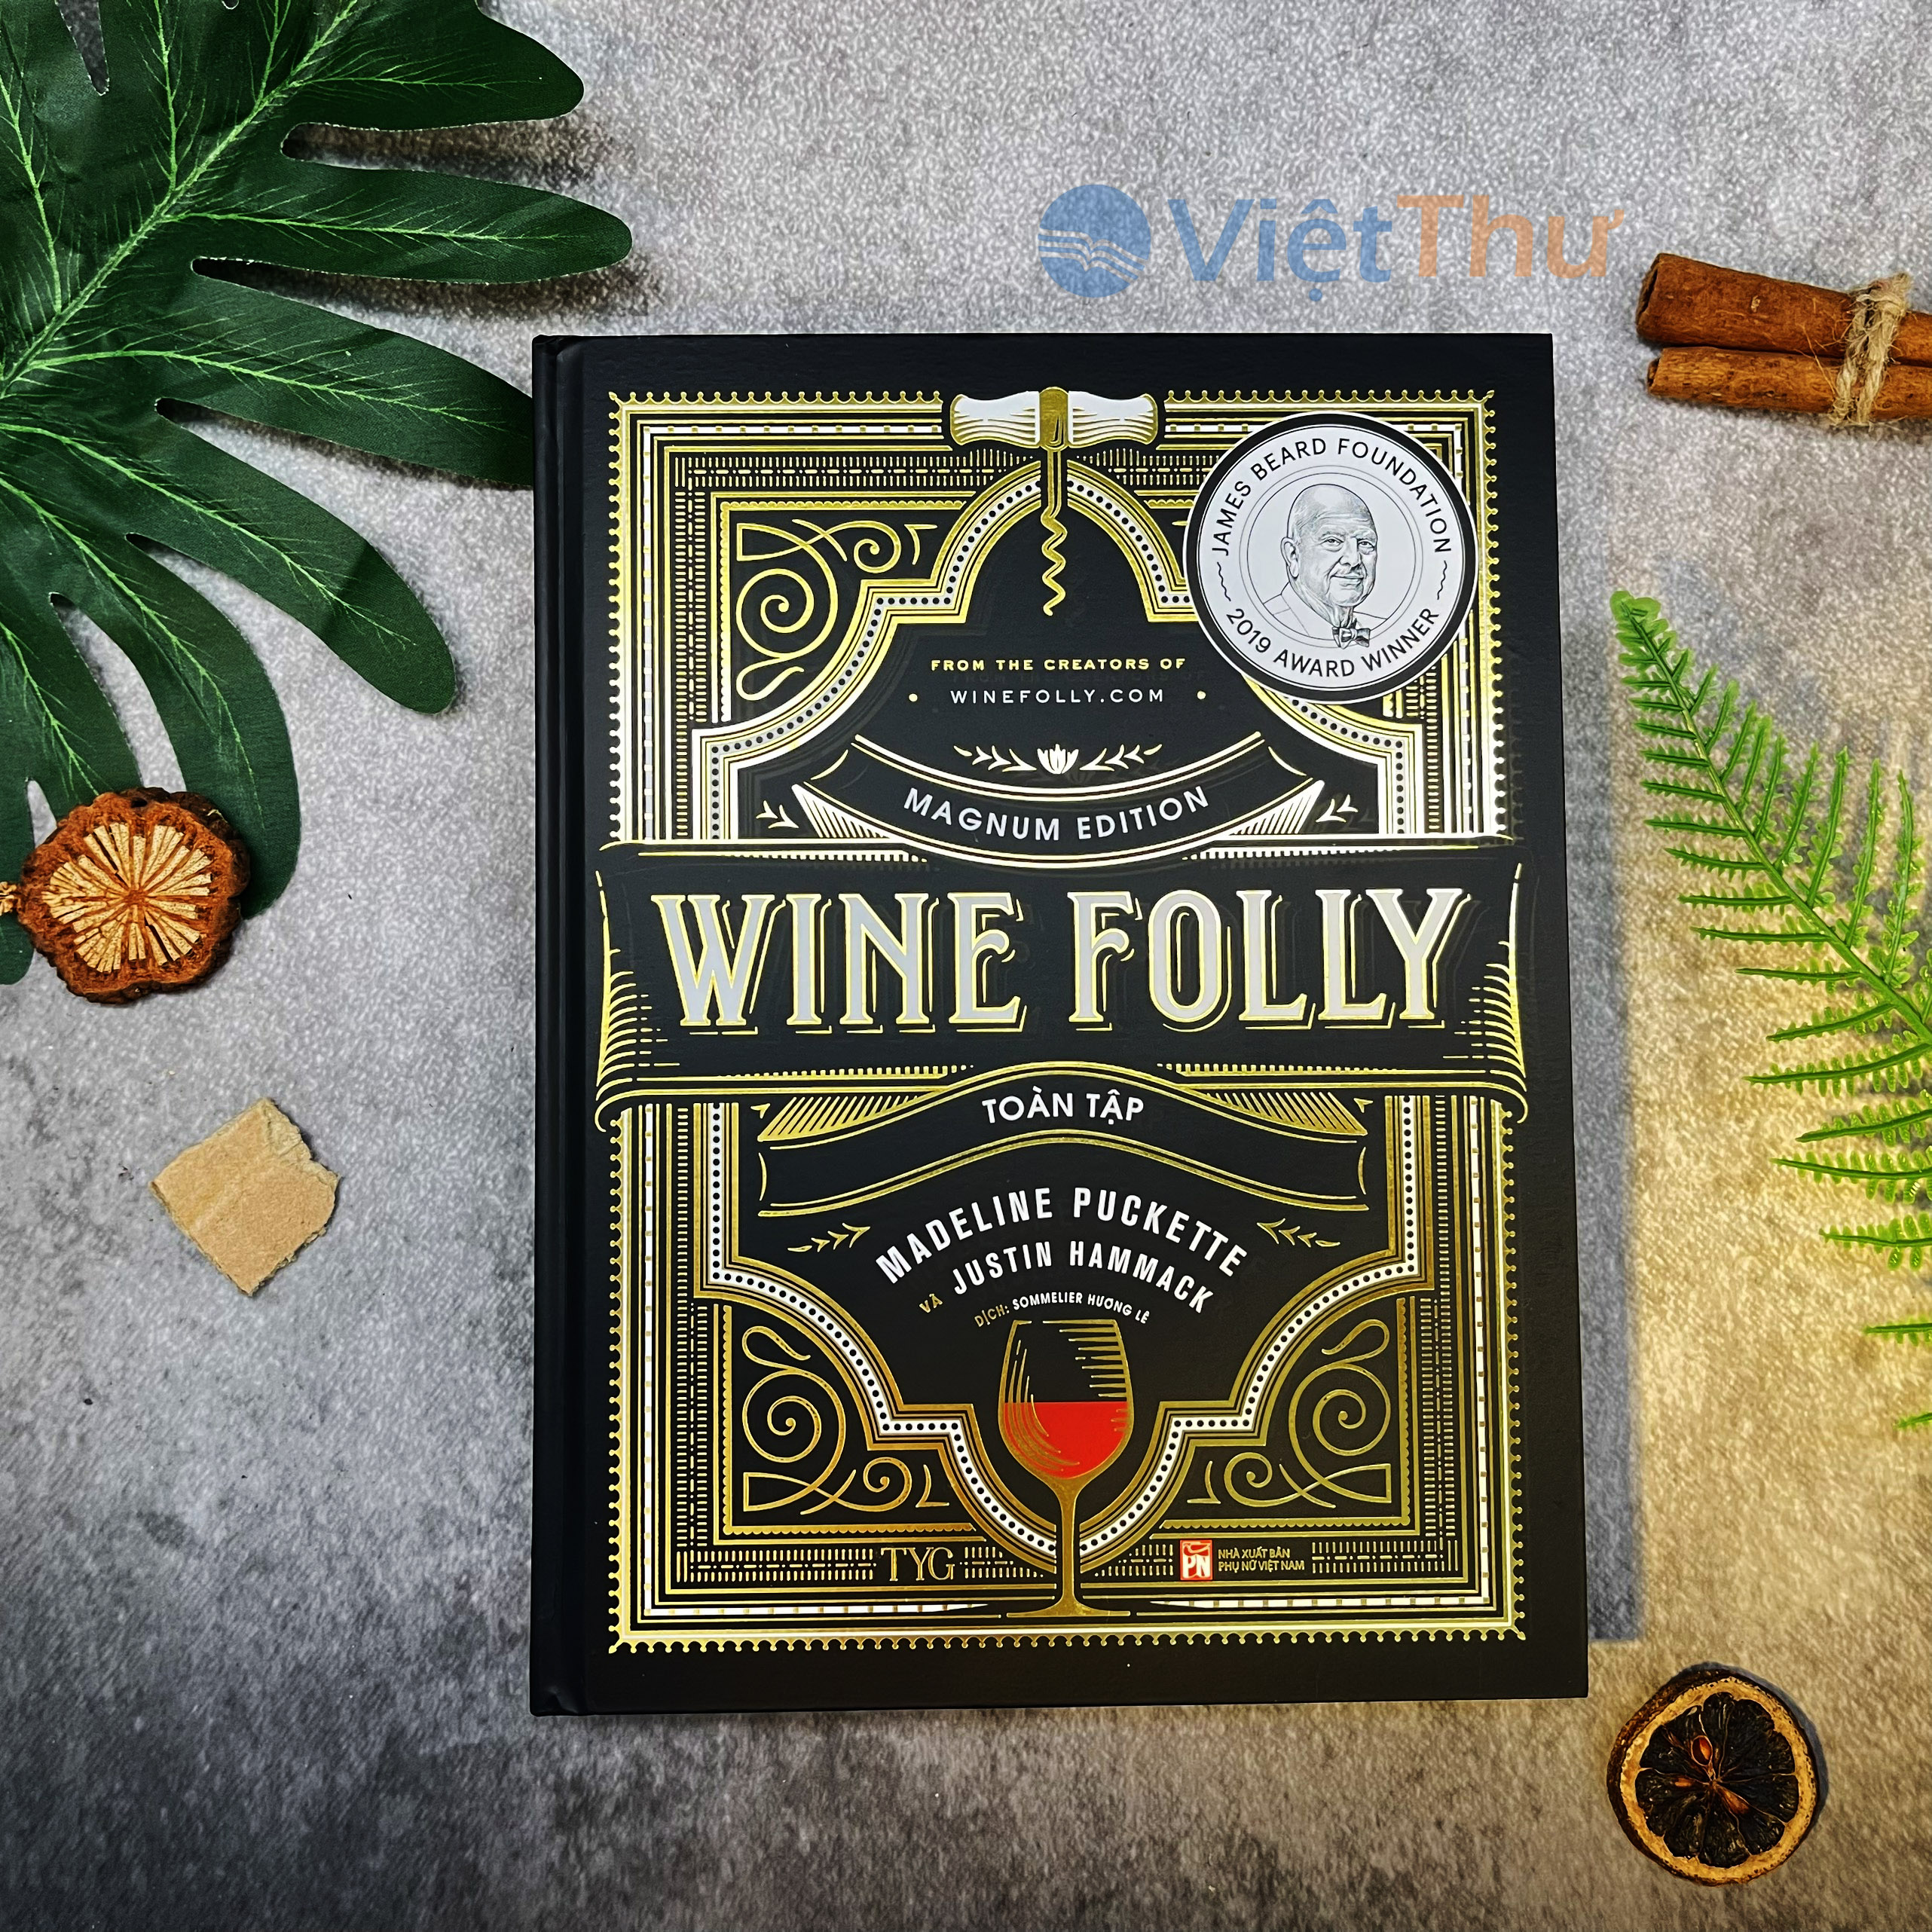 Sách - Wine Folly Toàn Tập (Phiên Bản Magnum edition)